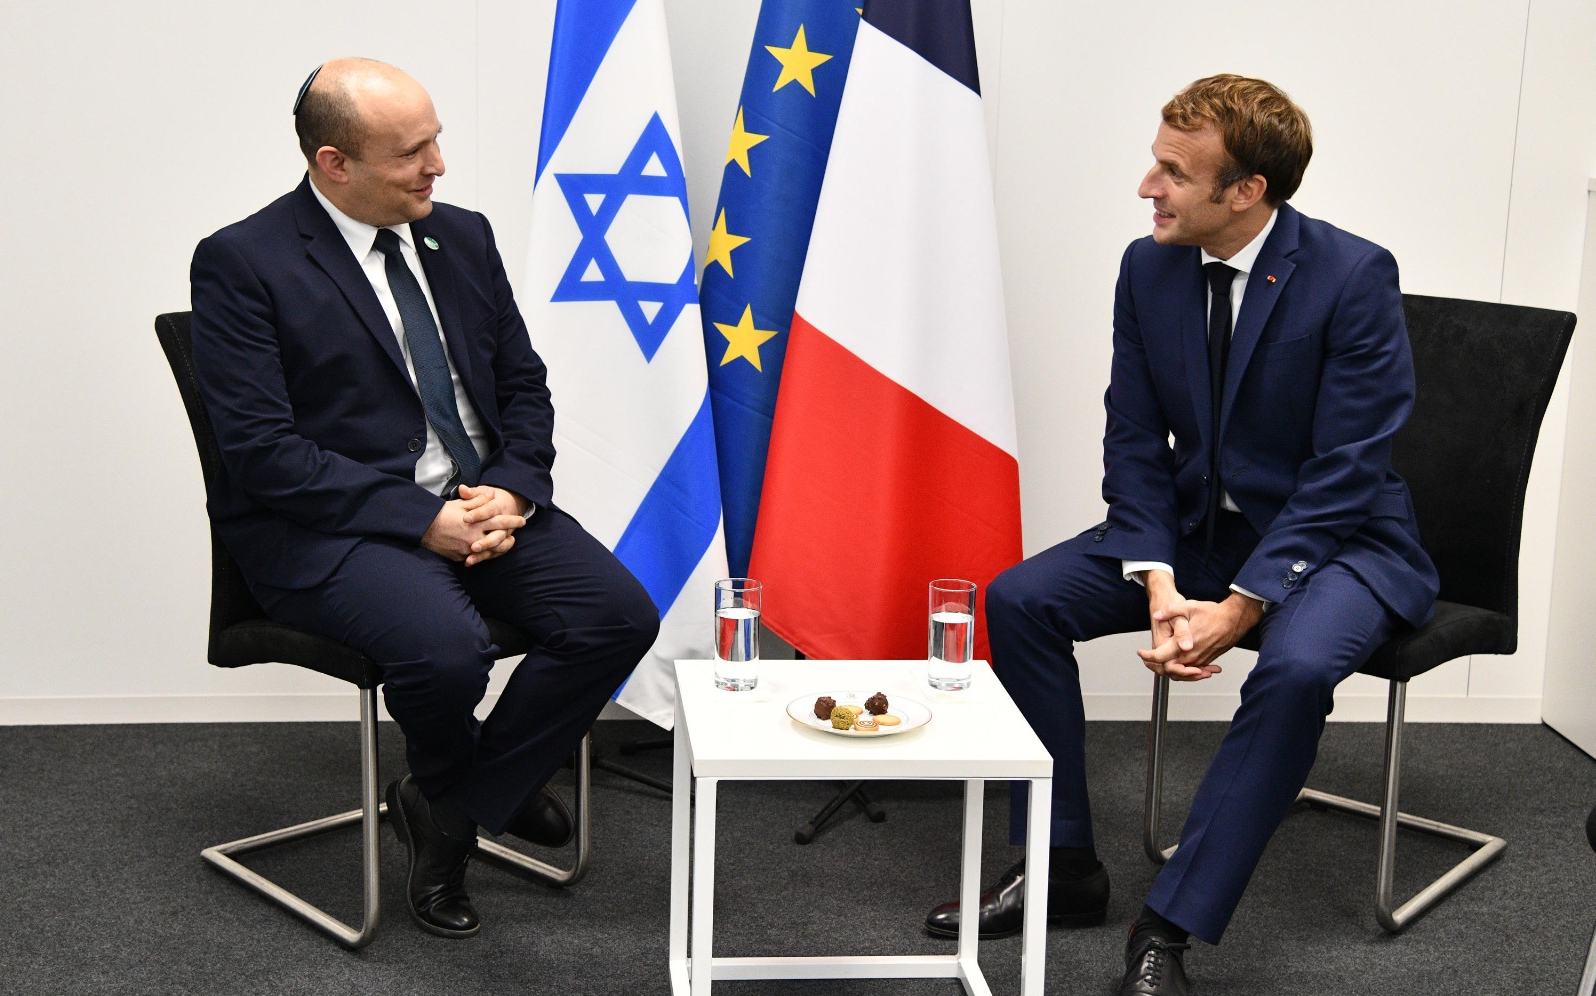 قضية “بيغاسوس”.. فرنسا وإسرائيل يتفقان على السرية لإنهاء التوتر